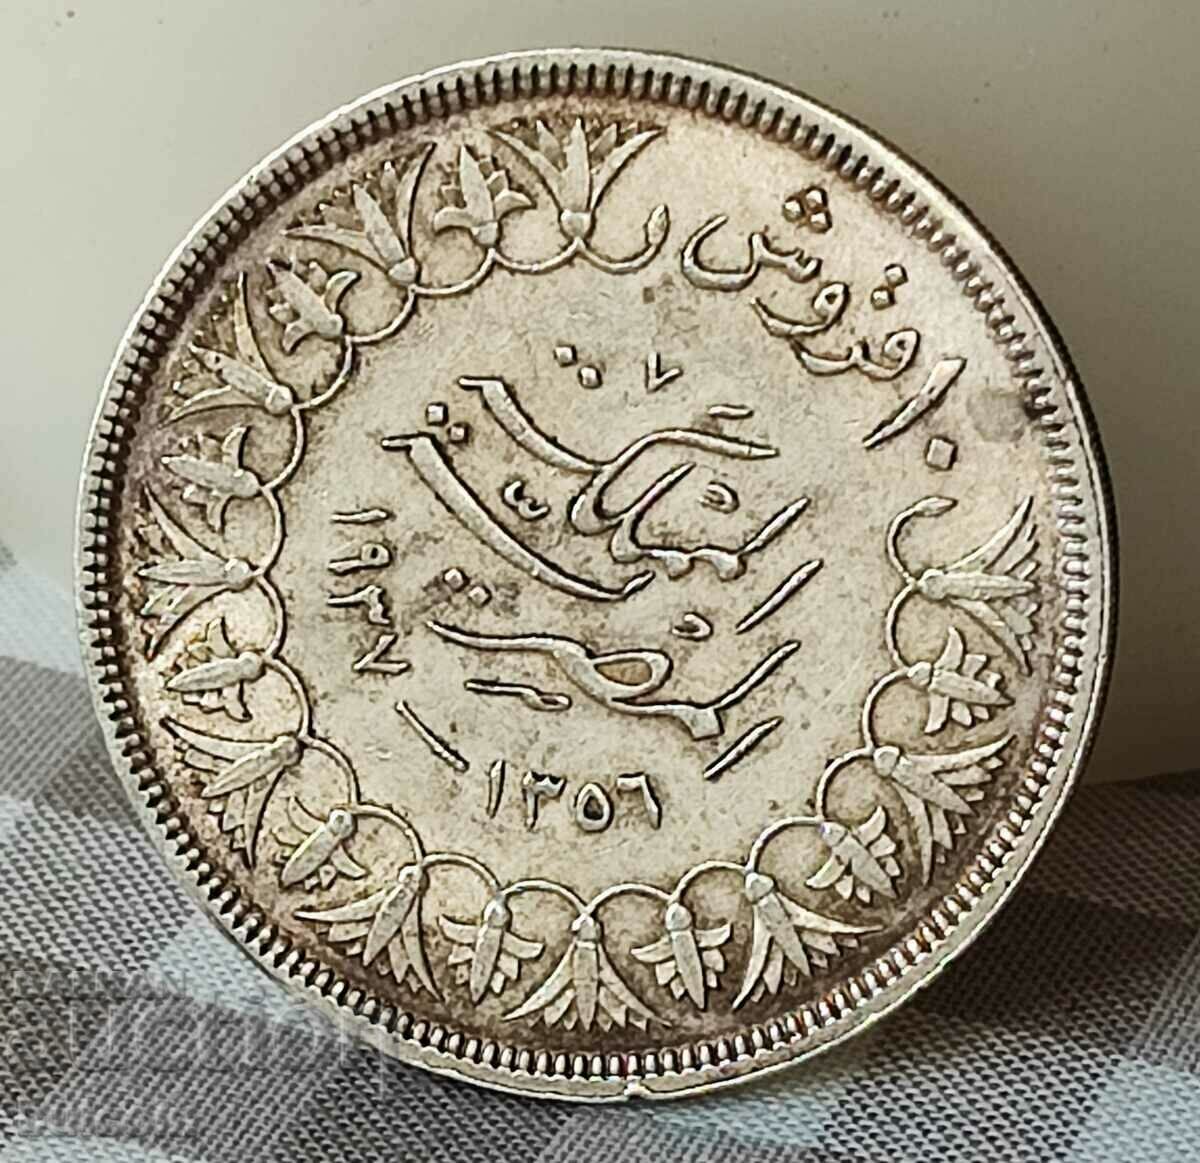 MONEDĂ DE ARGINT EGIPTUL 10 PIASTRI AN 1356 (1937)/ FAROUQ